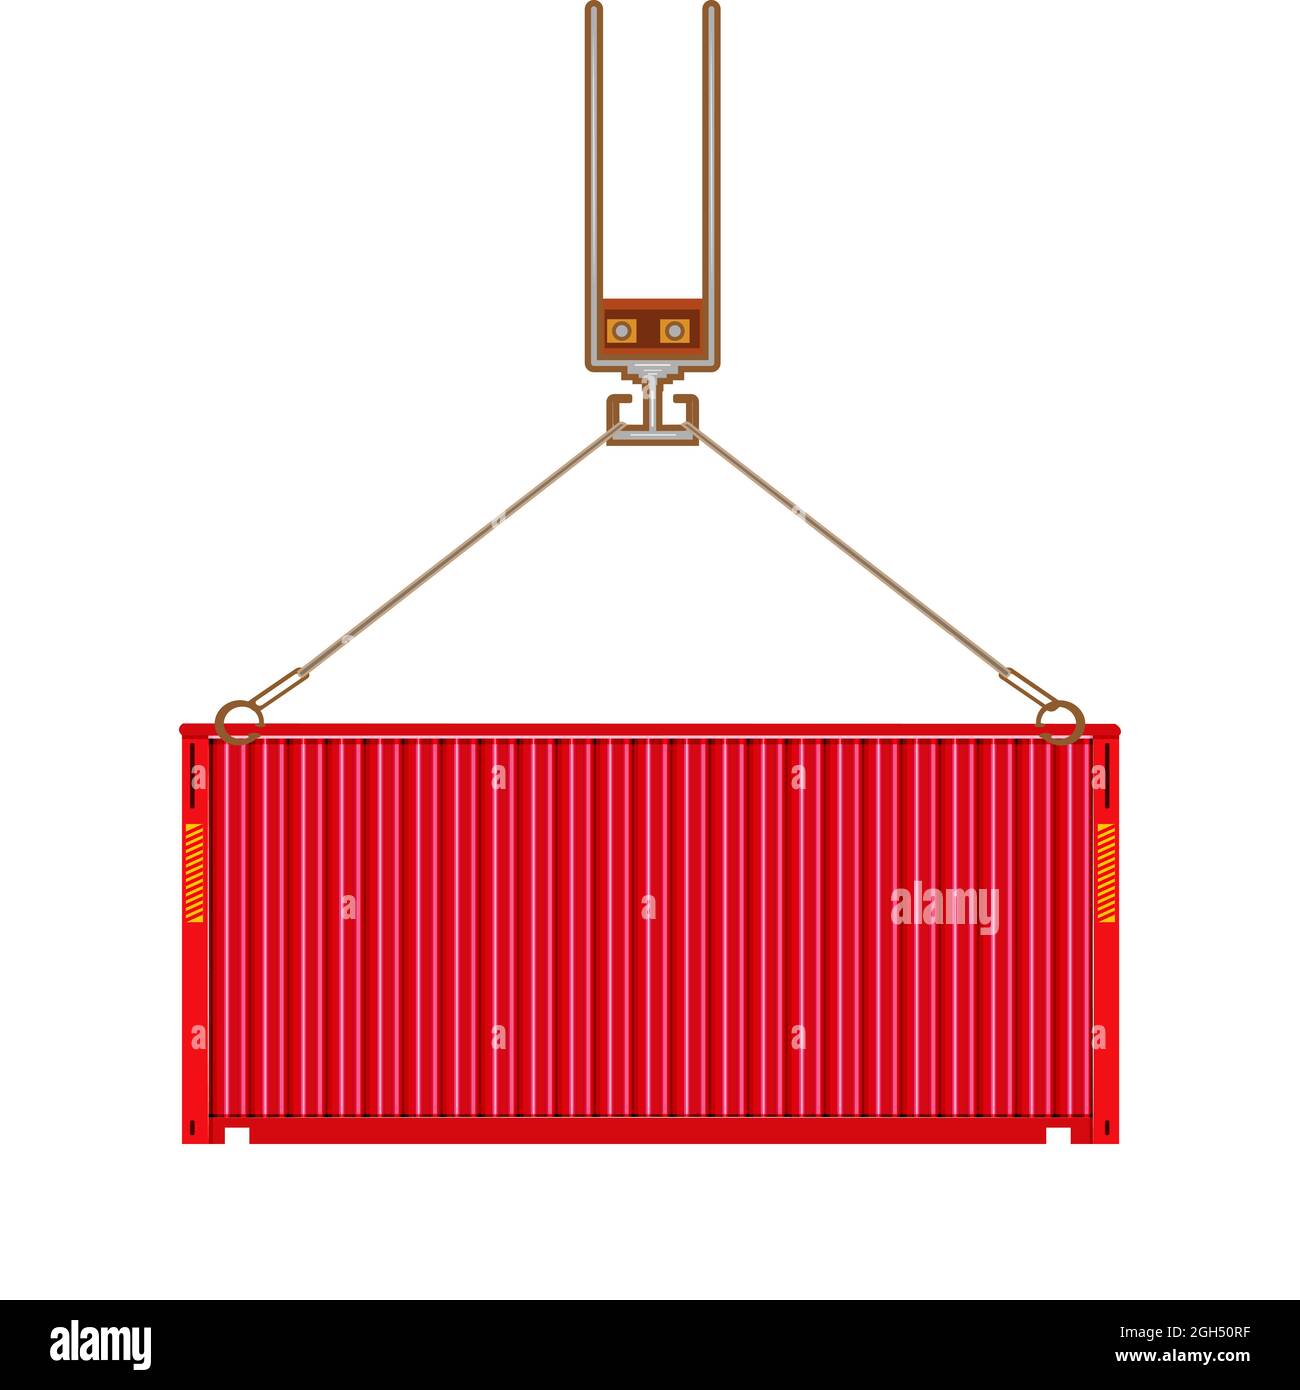 Frachtcontainer hängen auf Kranhaken isoliert auf weißem Hintergrund. Hafenkran hebt Ladung roten Container. Vorderansicht. Vektorgrafik Stock Vektor